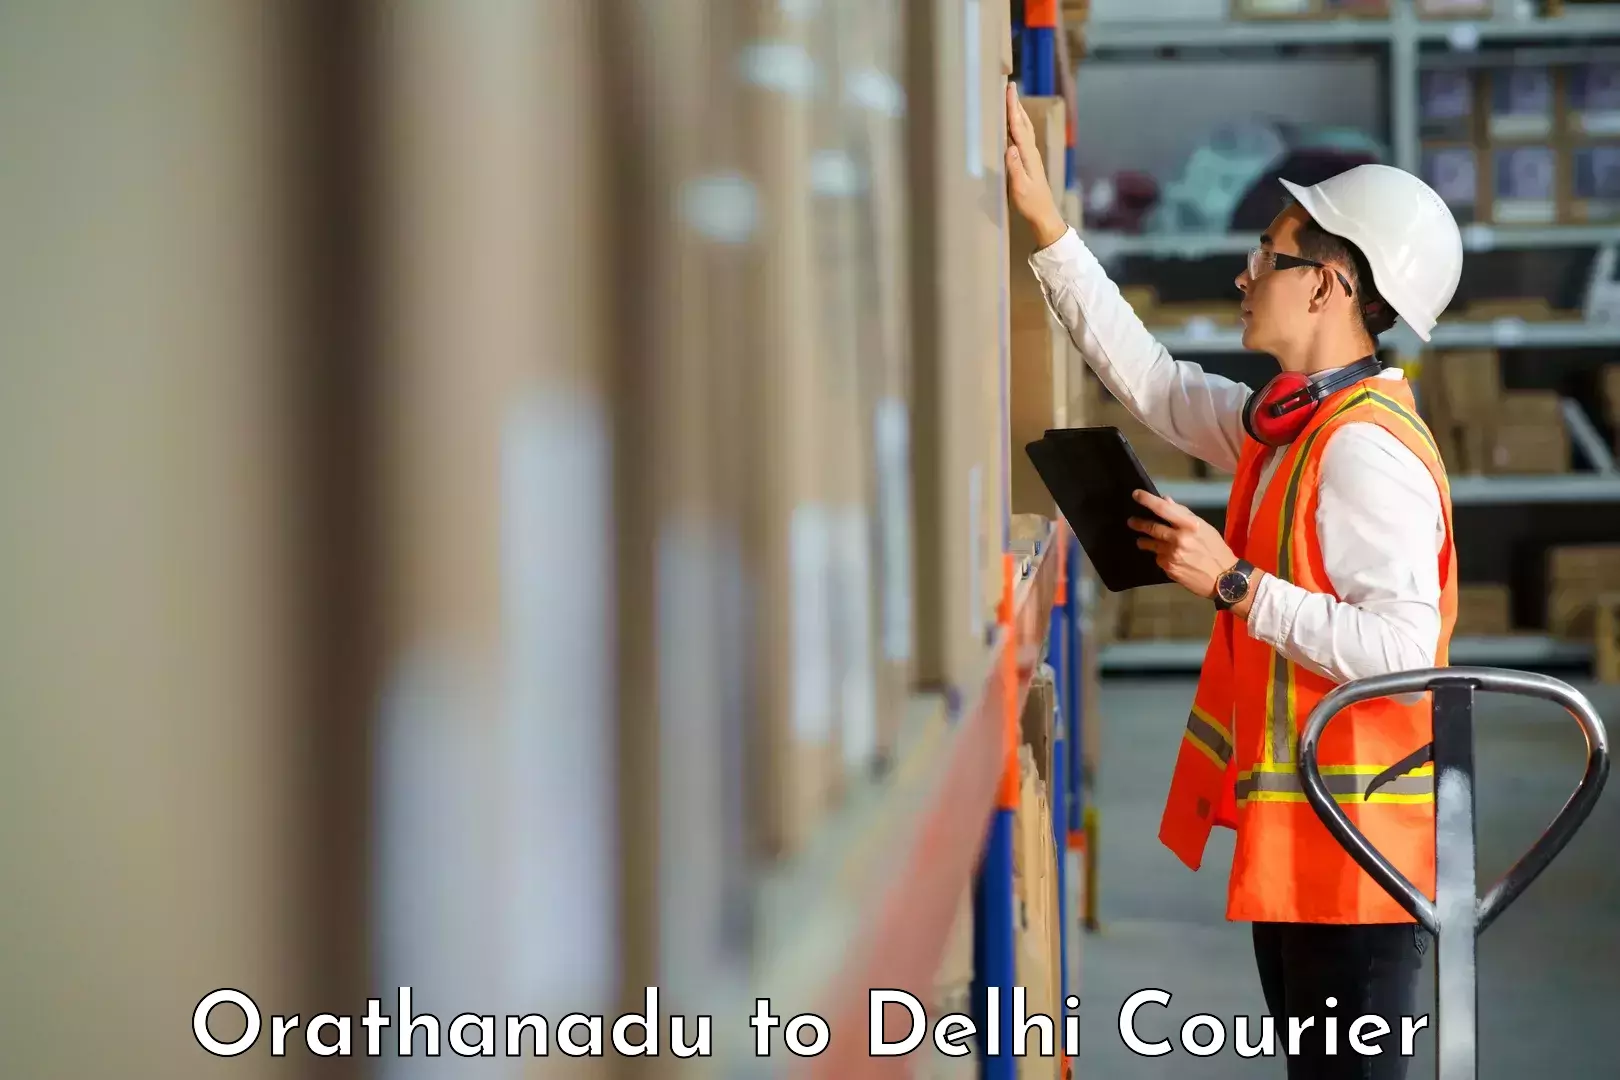 24-hour courier service Orathanadu to NIT Delhi